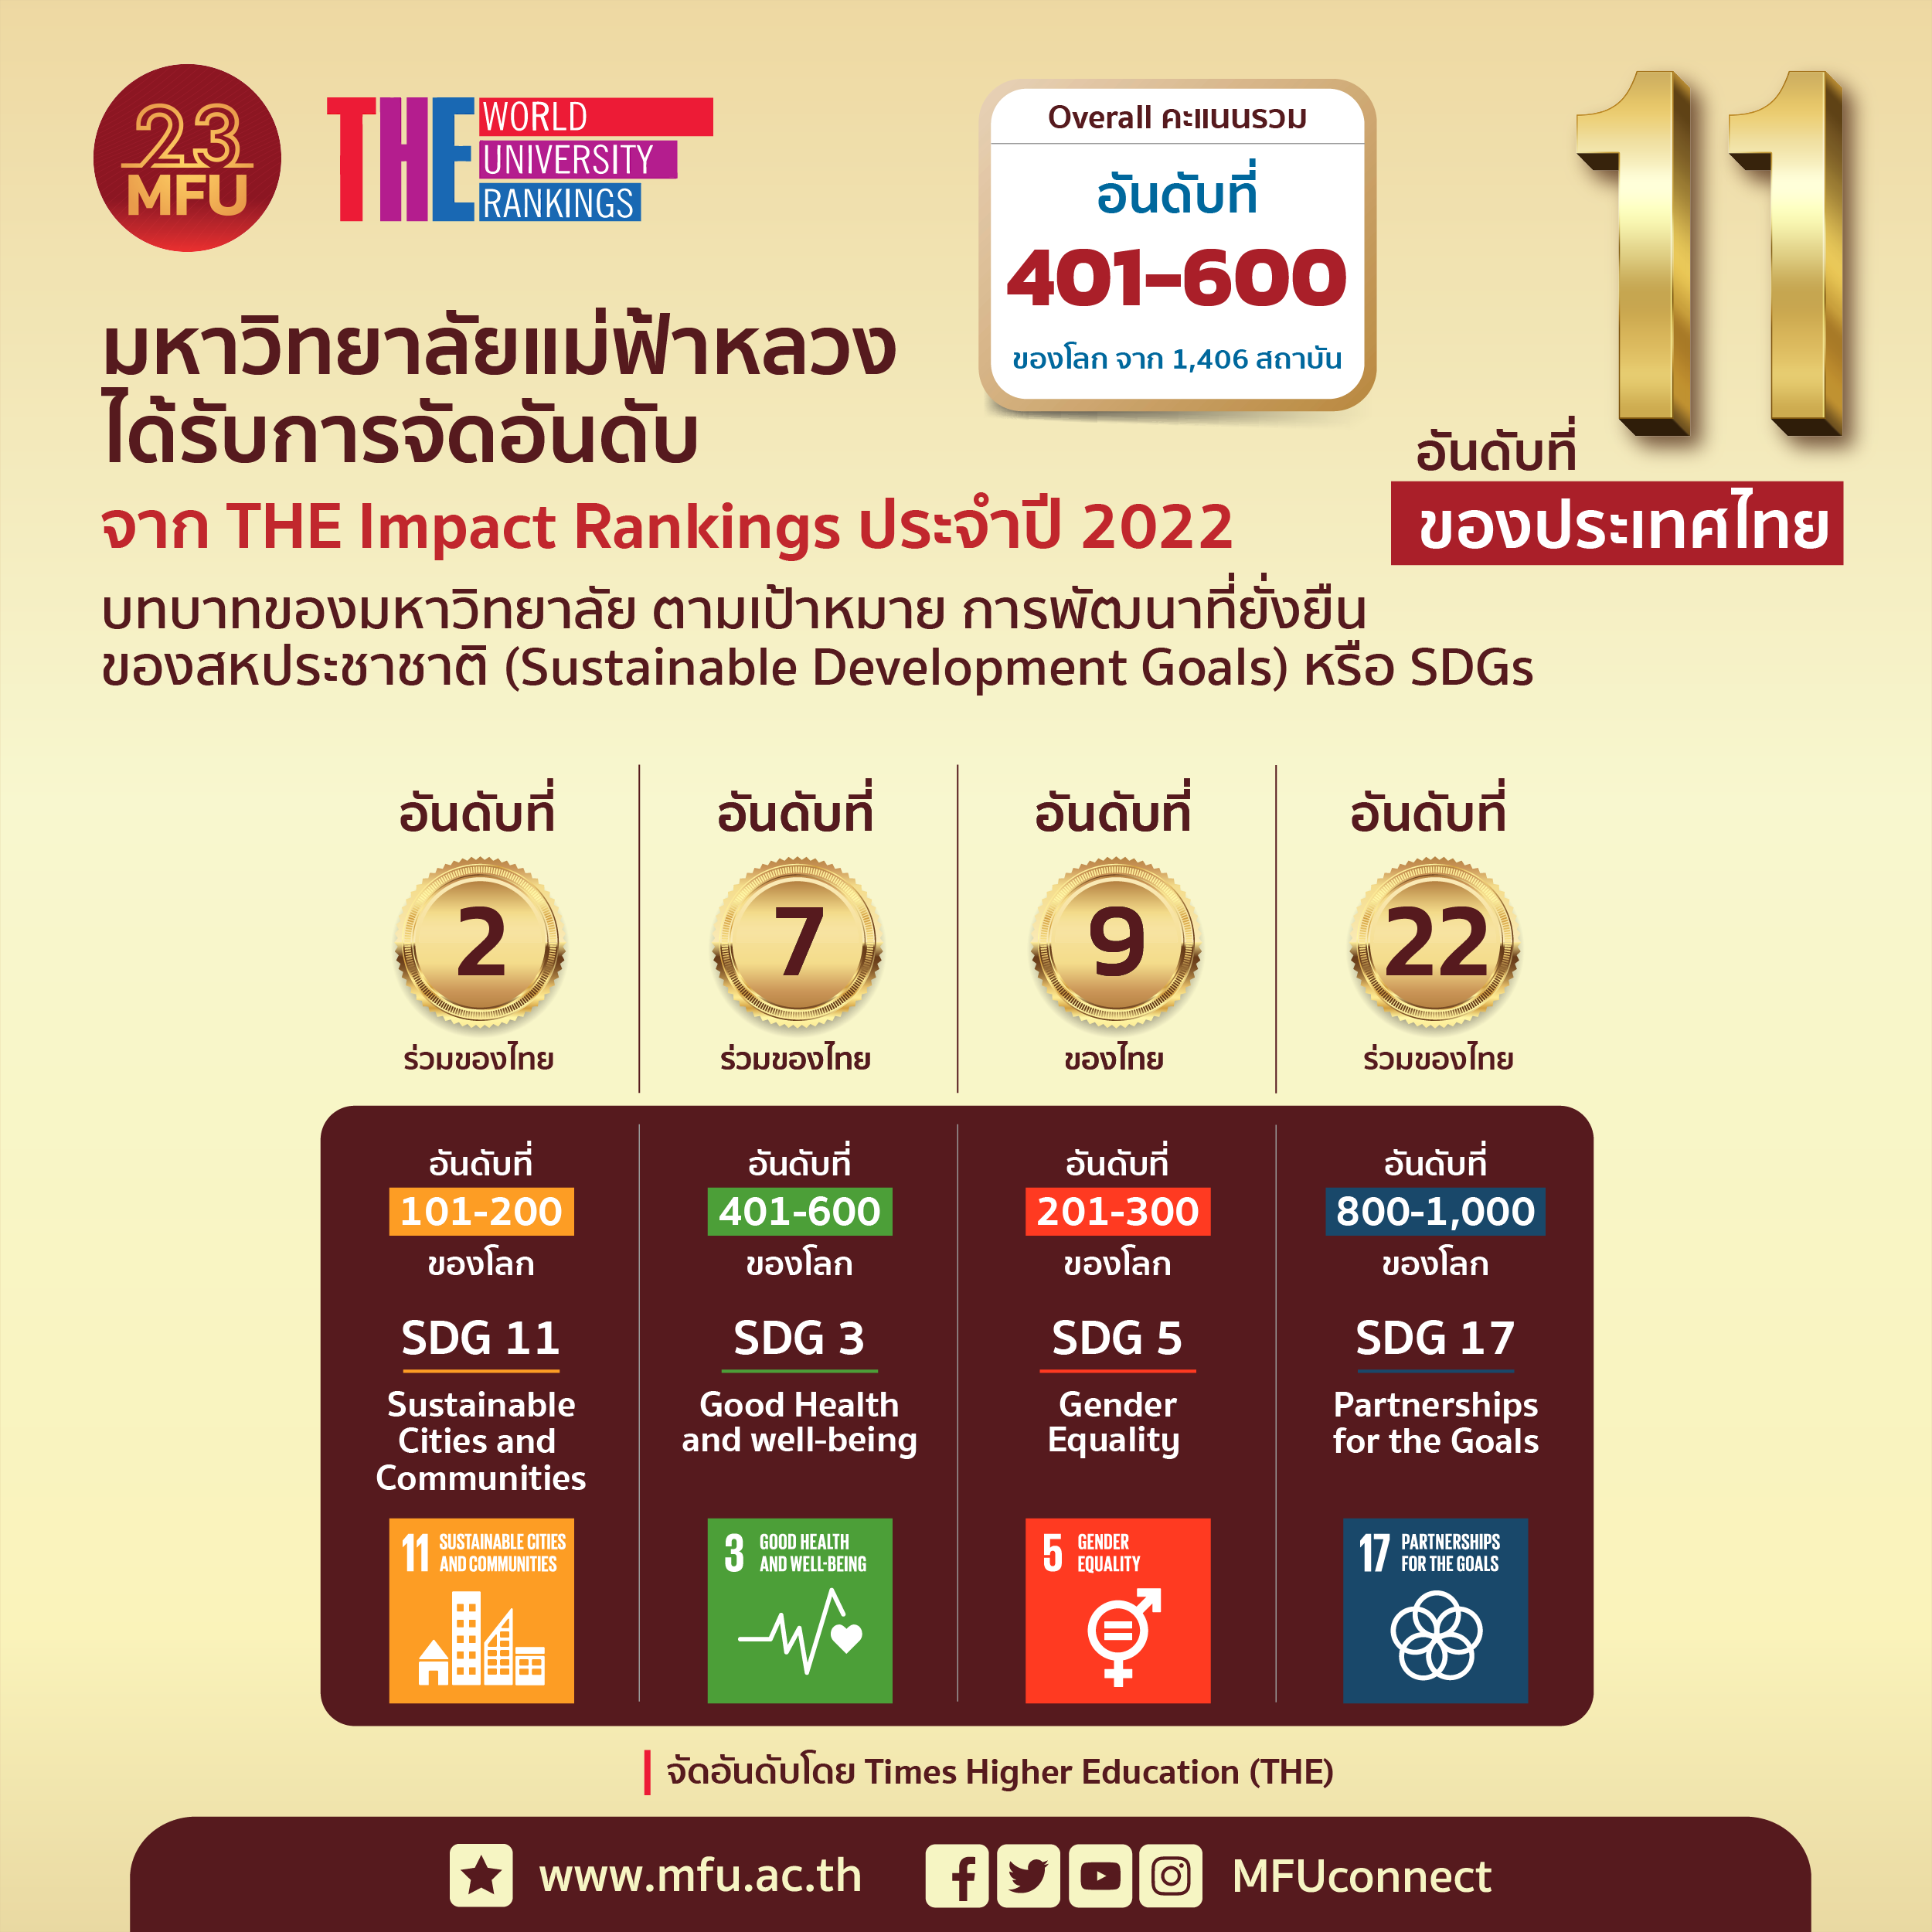 มฟล. 1 ใน 51 มหาวิทยาลัยตัวแทนประเทศไทยบนเวทีโลกของการจัดอันดับ THE Impact Rankings 2022